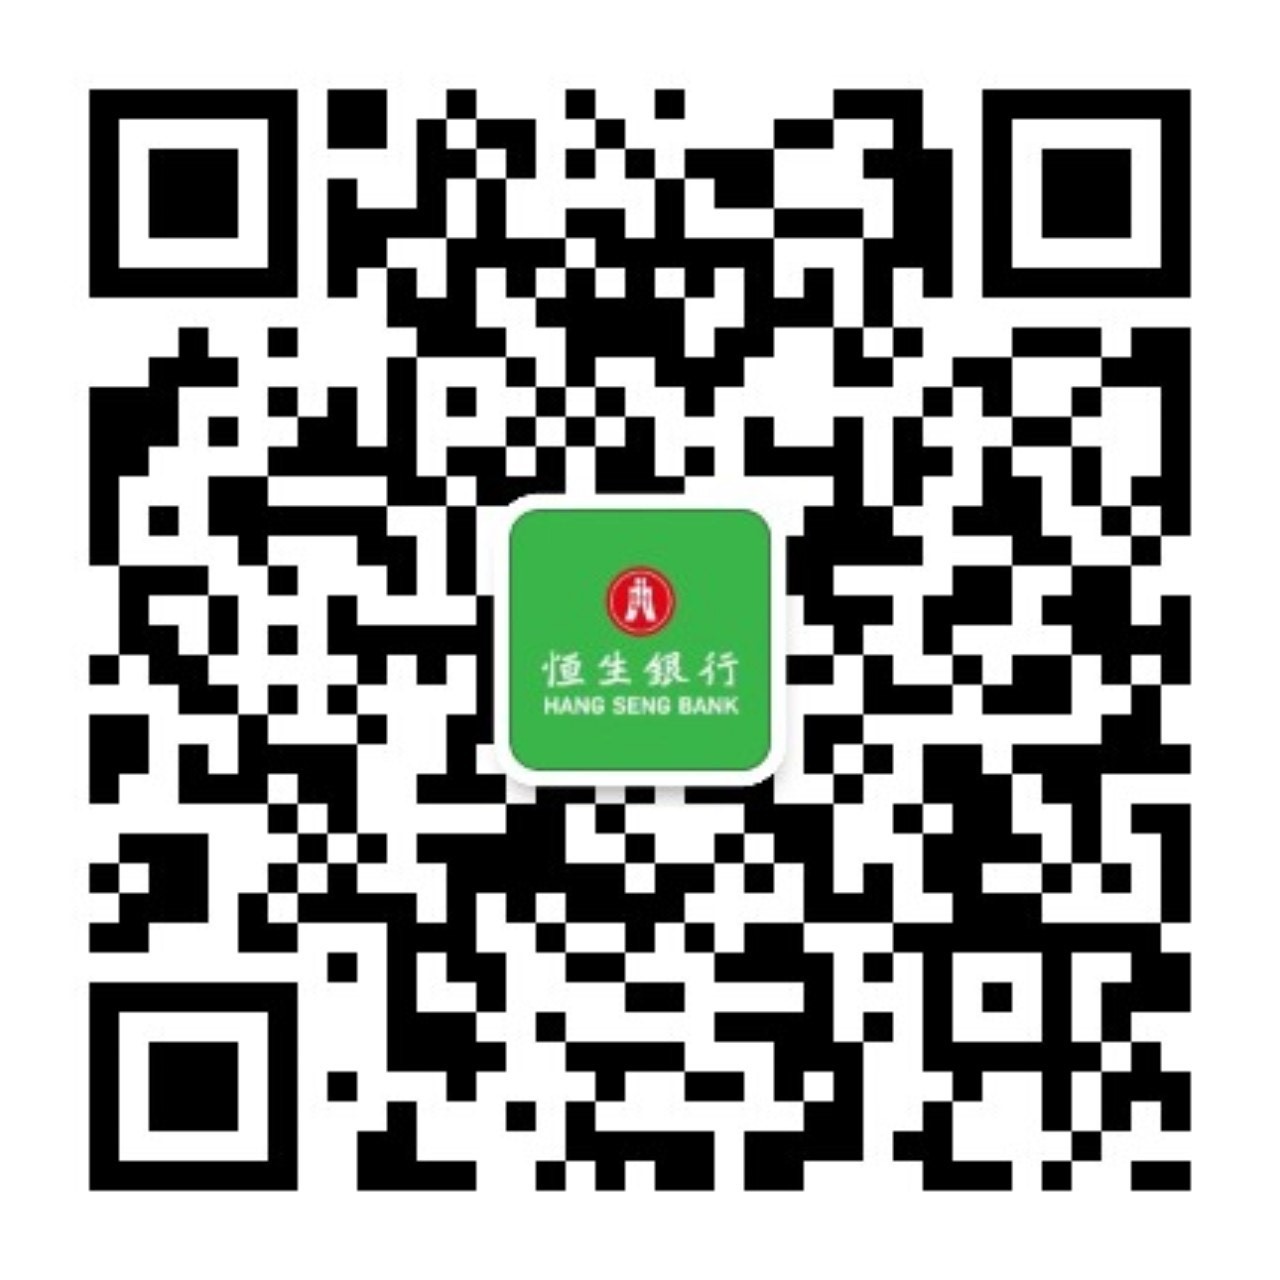 在微信APP中搜索 HangSeng_HK 或 恒生香港個人理財， 或掃描二維碼即可關注我們。